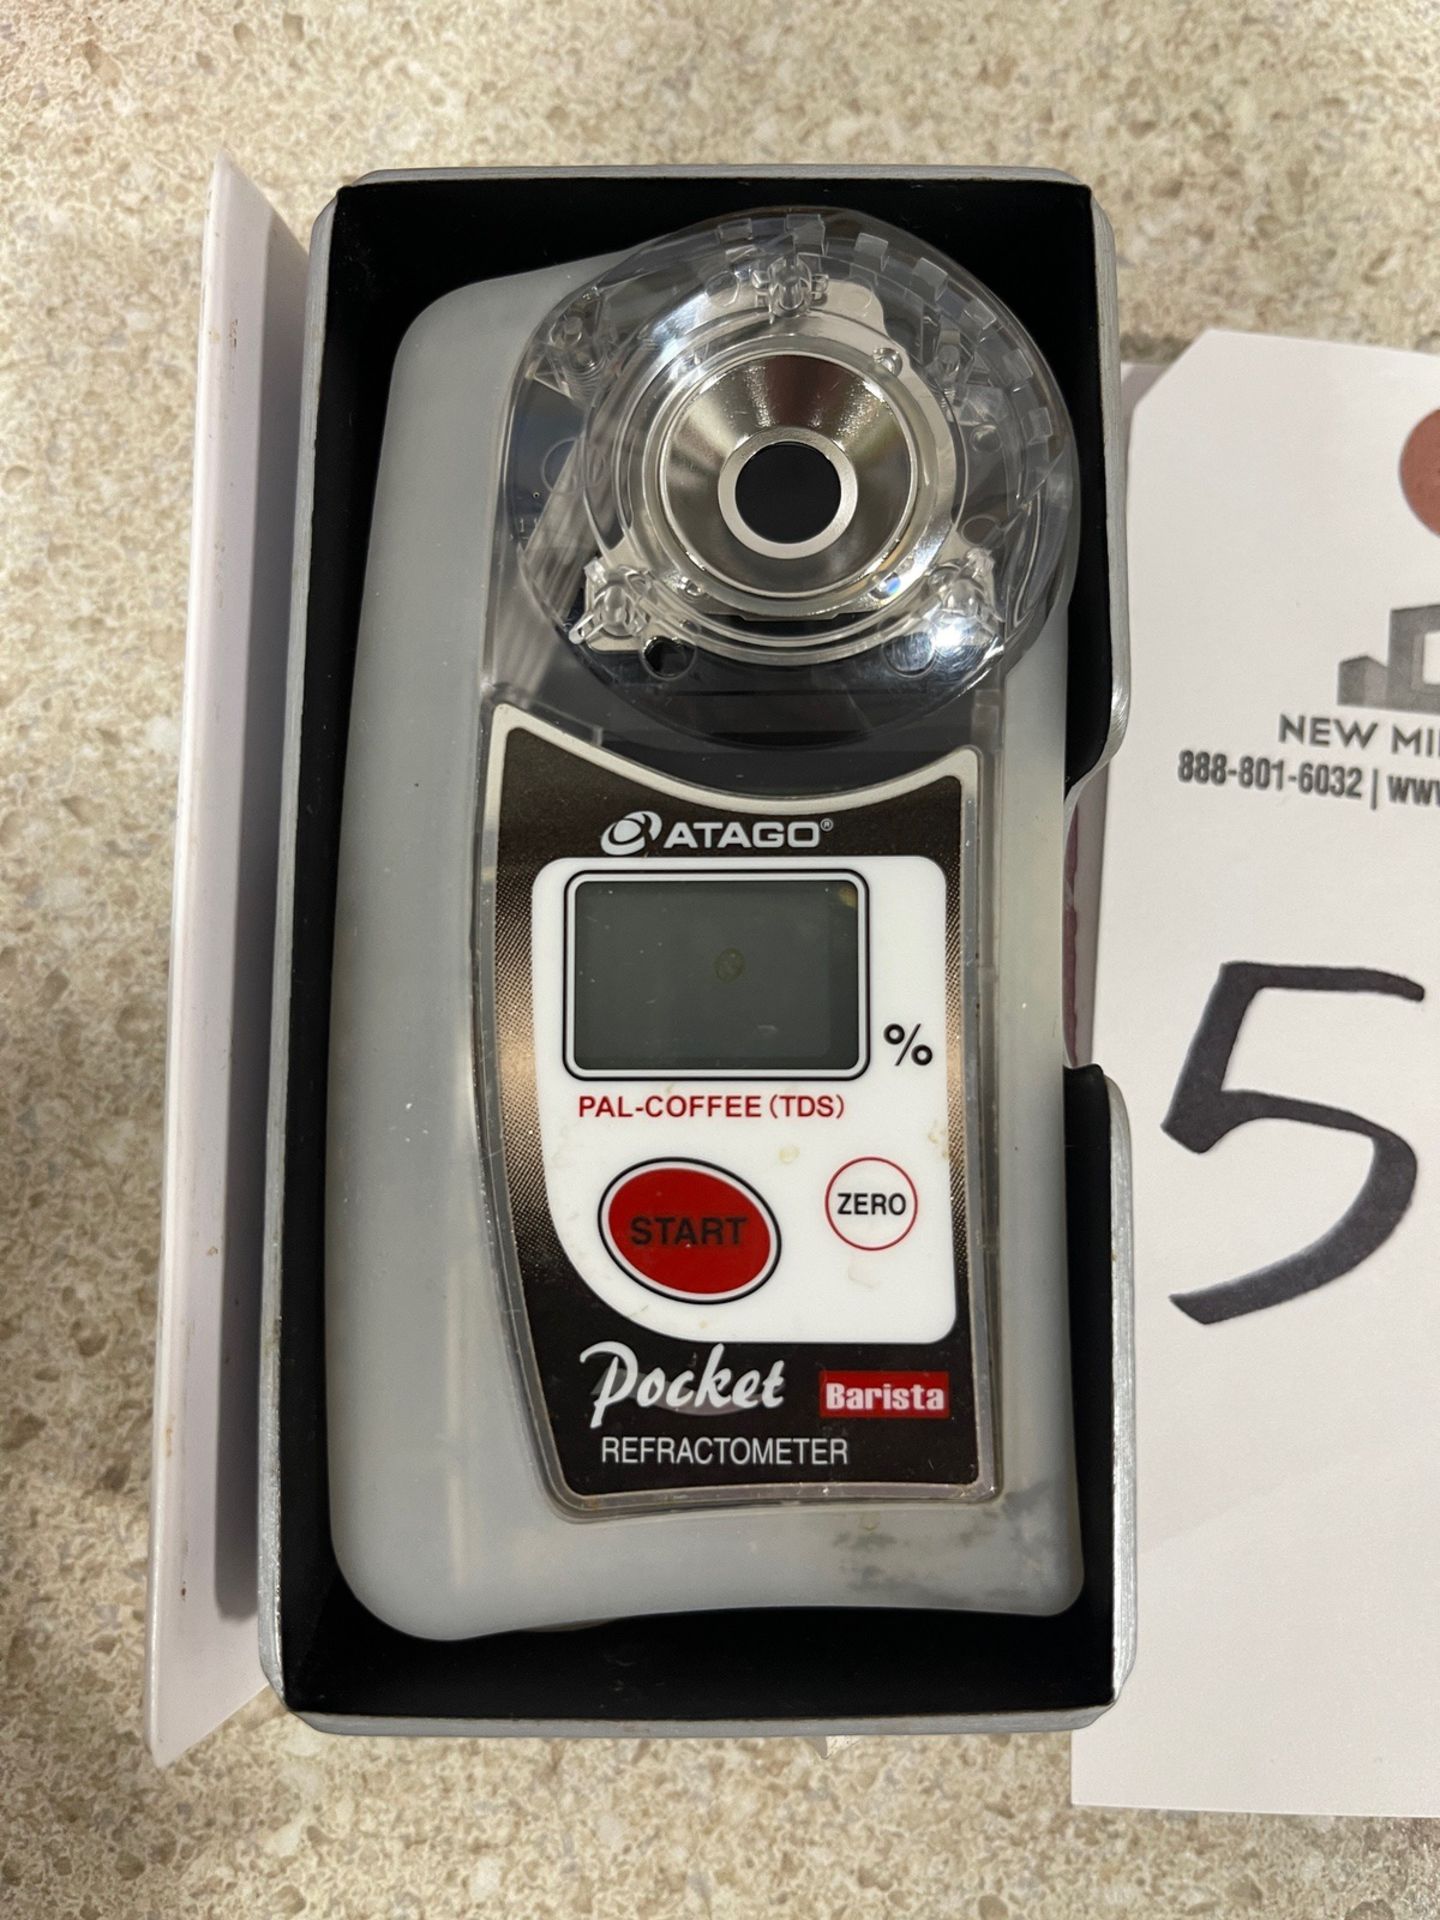 Atago Barista Pocket Refractometer | Rig Fee $25